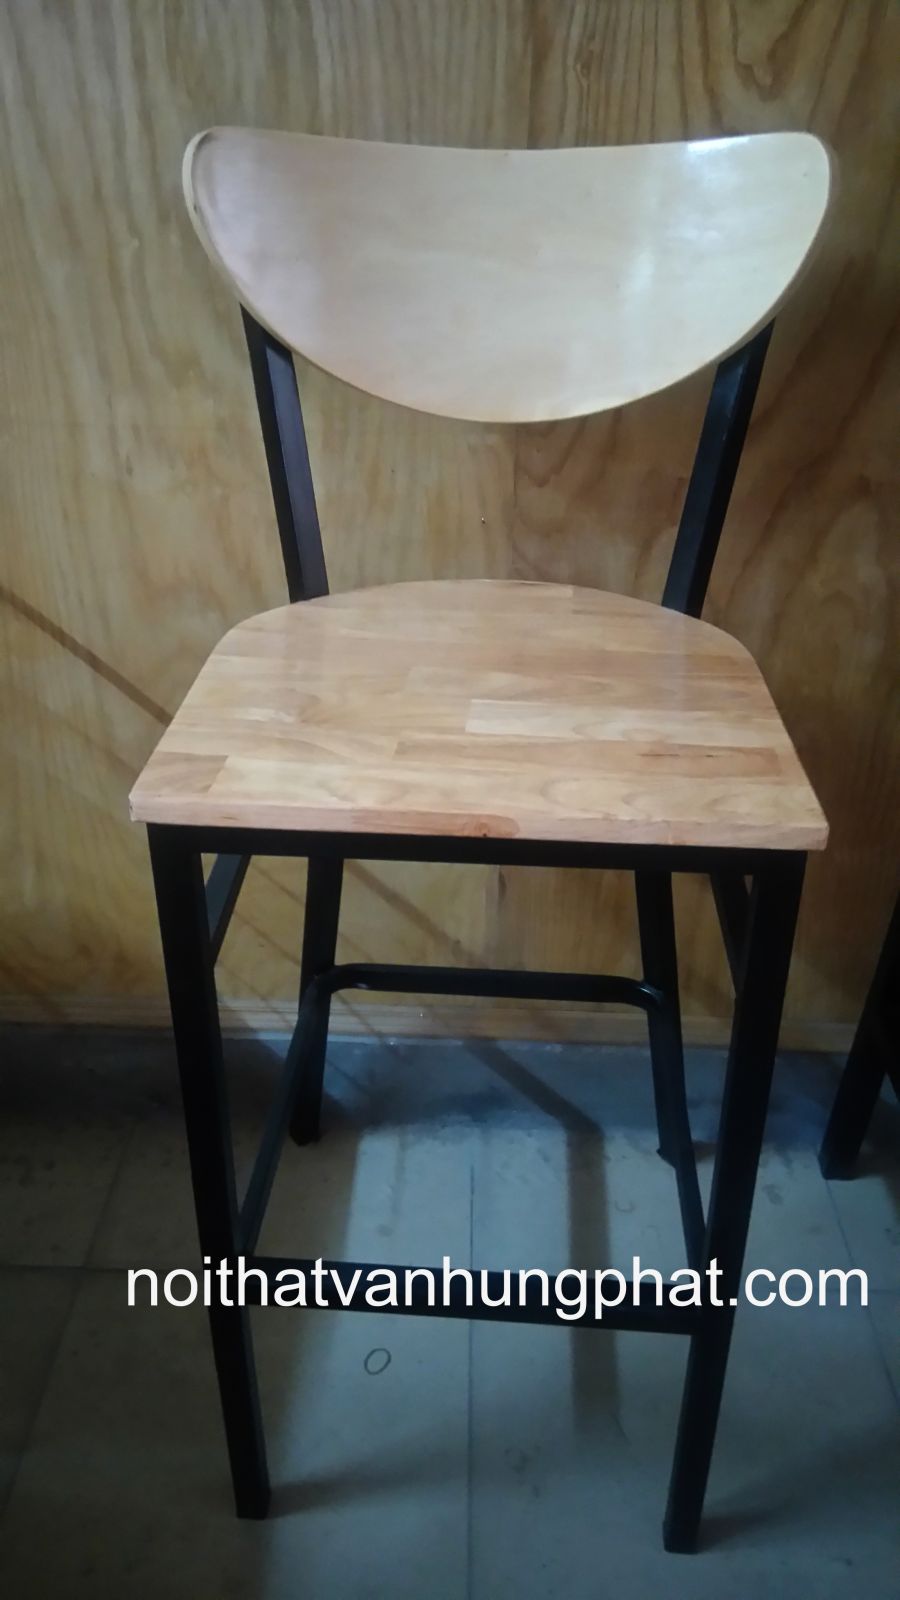 Ghế bar chân sắt mặt gỗ GB9